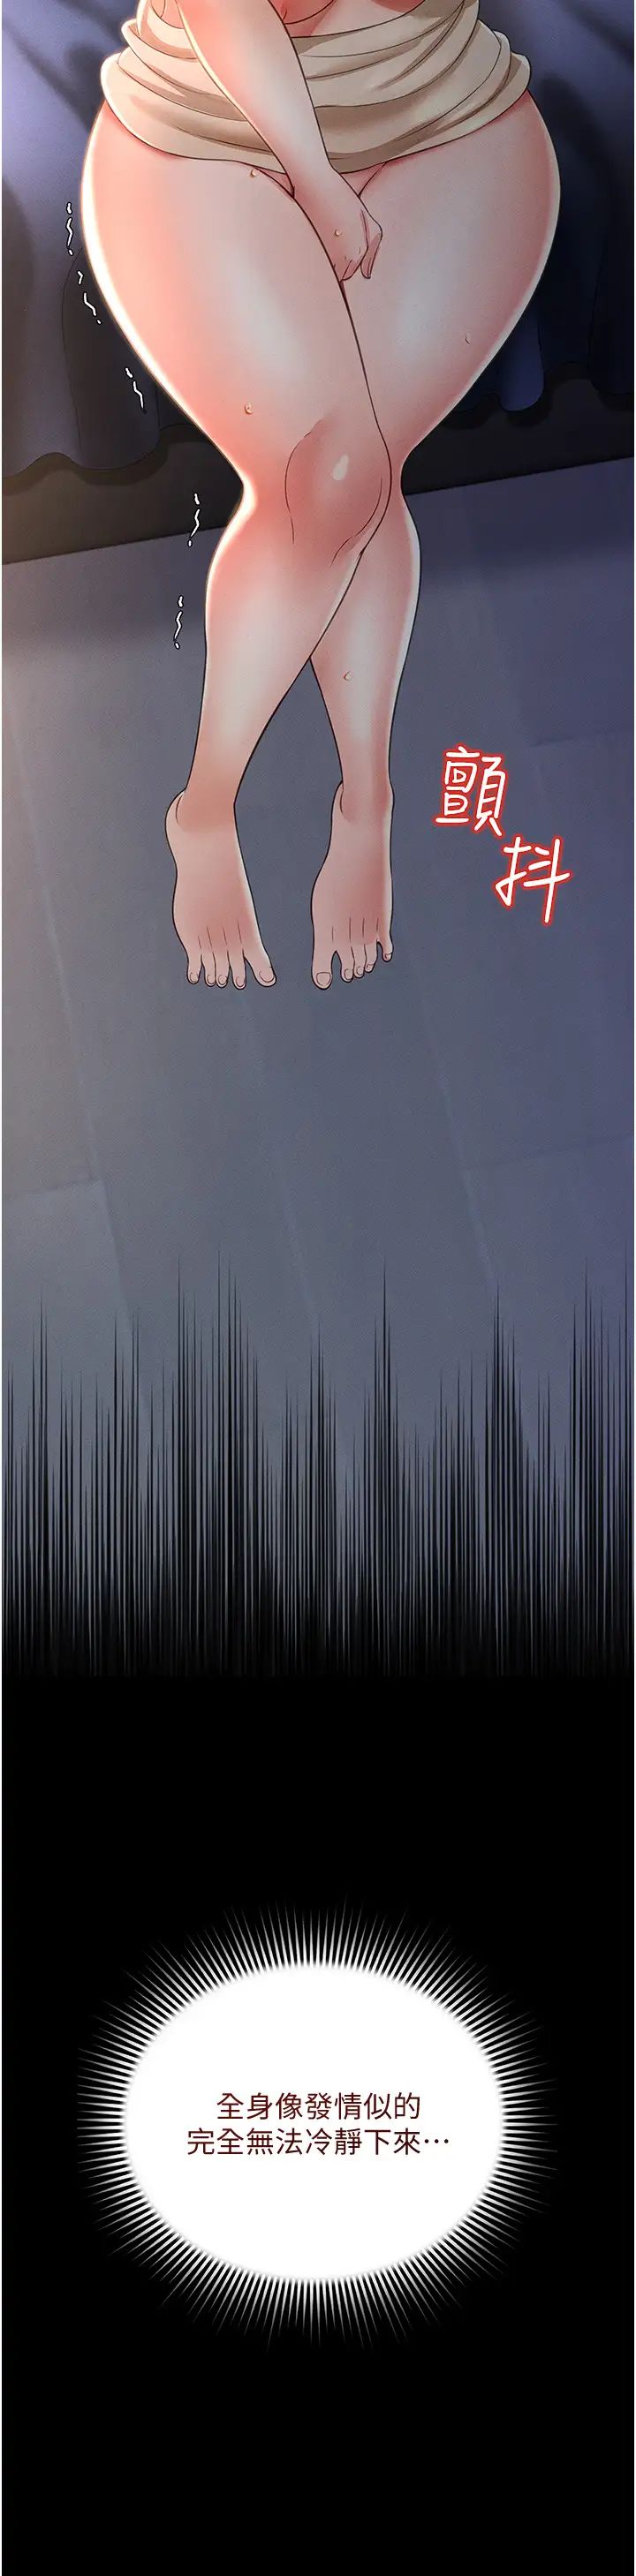 《萌鬼飯店實錄》在线观看 第11话-睡梦中被「鬼压床」 漫画图片16